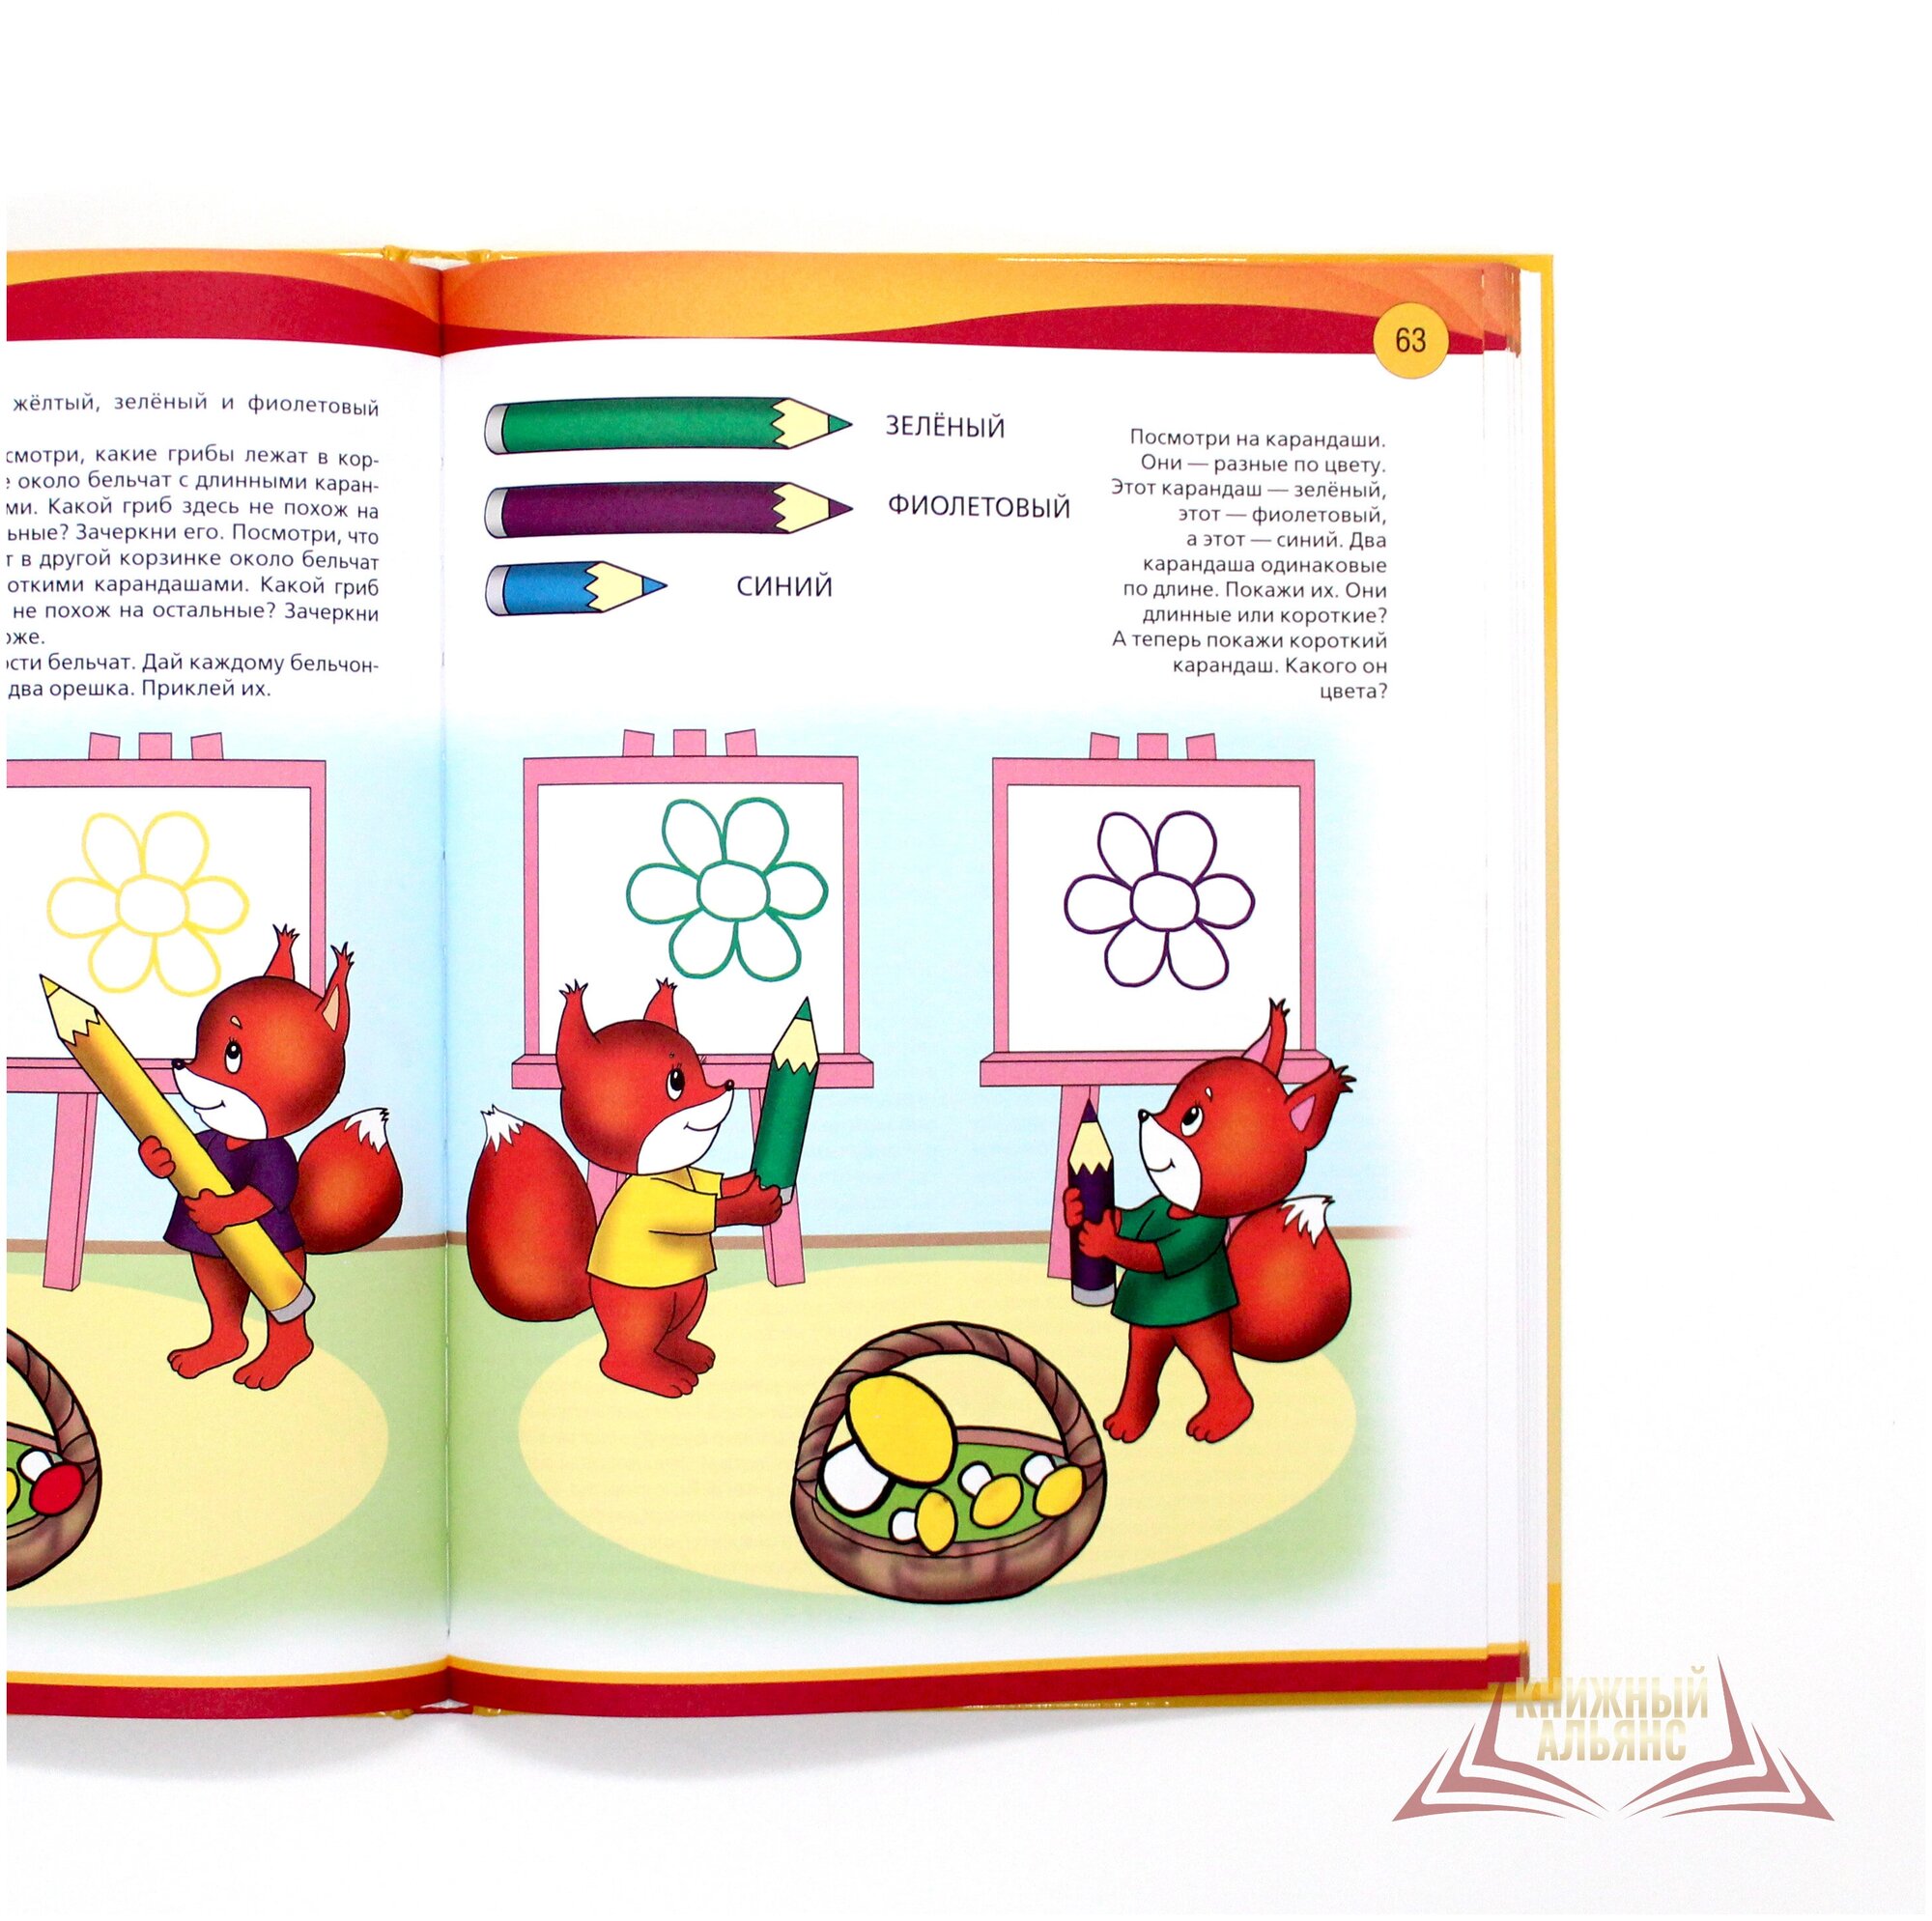 Жёлтая книга развивающих занятий для детей 3-4 лет - фото №3